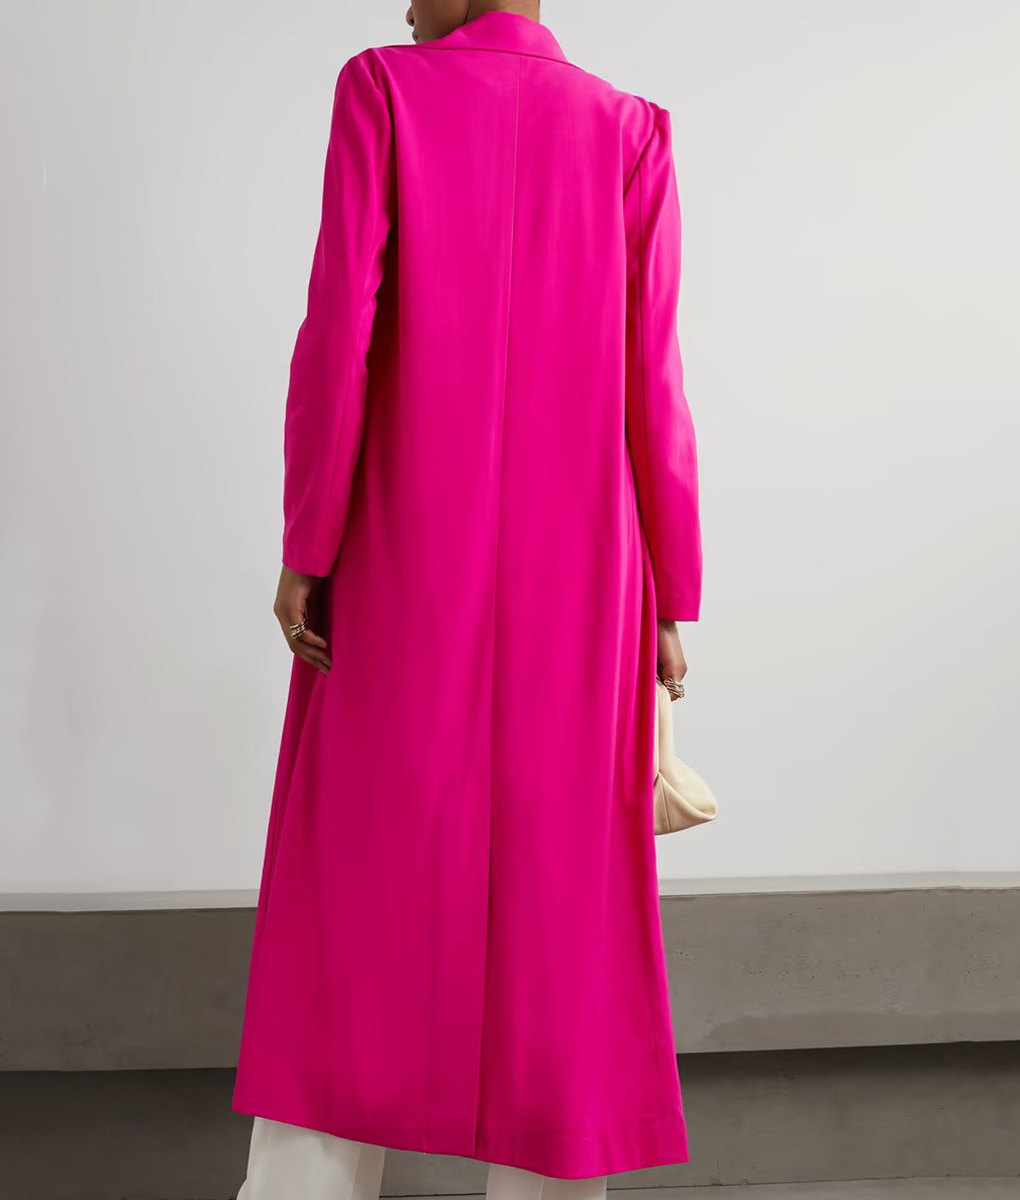 Nicole Ari Parker Pink Coat (1)